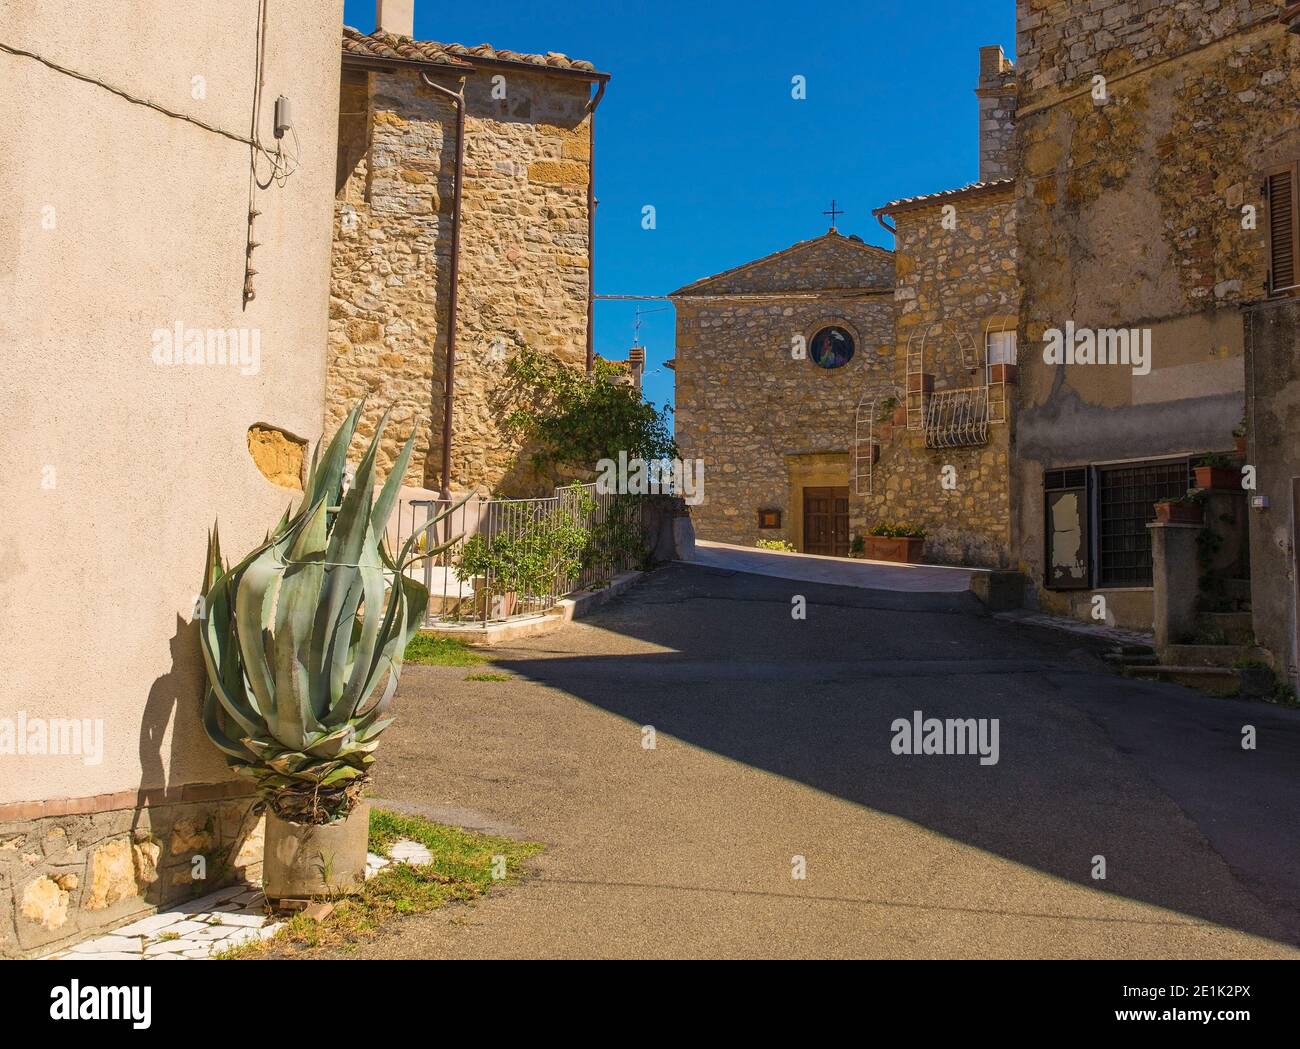 Une rue résidentielle dans le village médiéval historique de Poggio Capanne près de Manciano dans la province de Grosseto en Toscane, Italie. Église du 5e siècle Banque D'Images